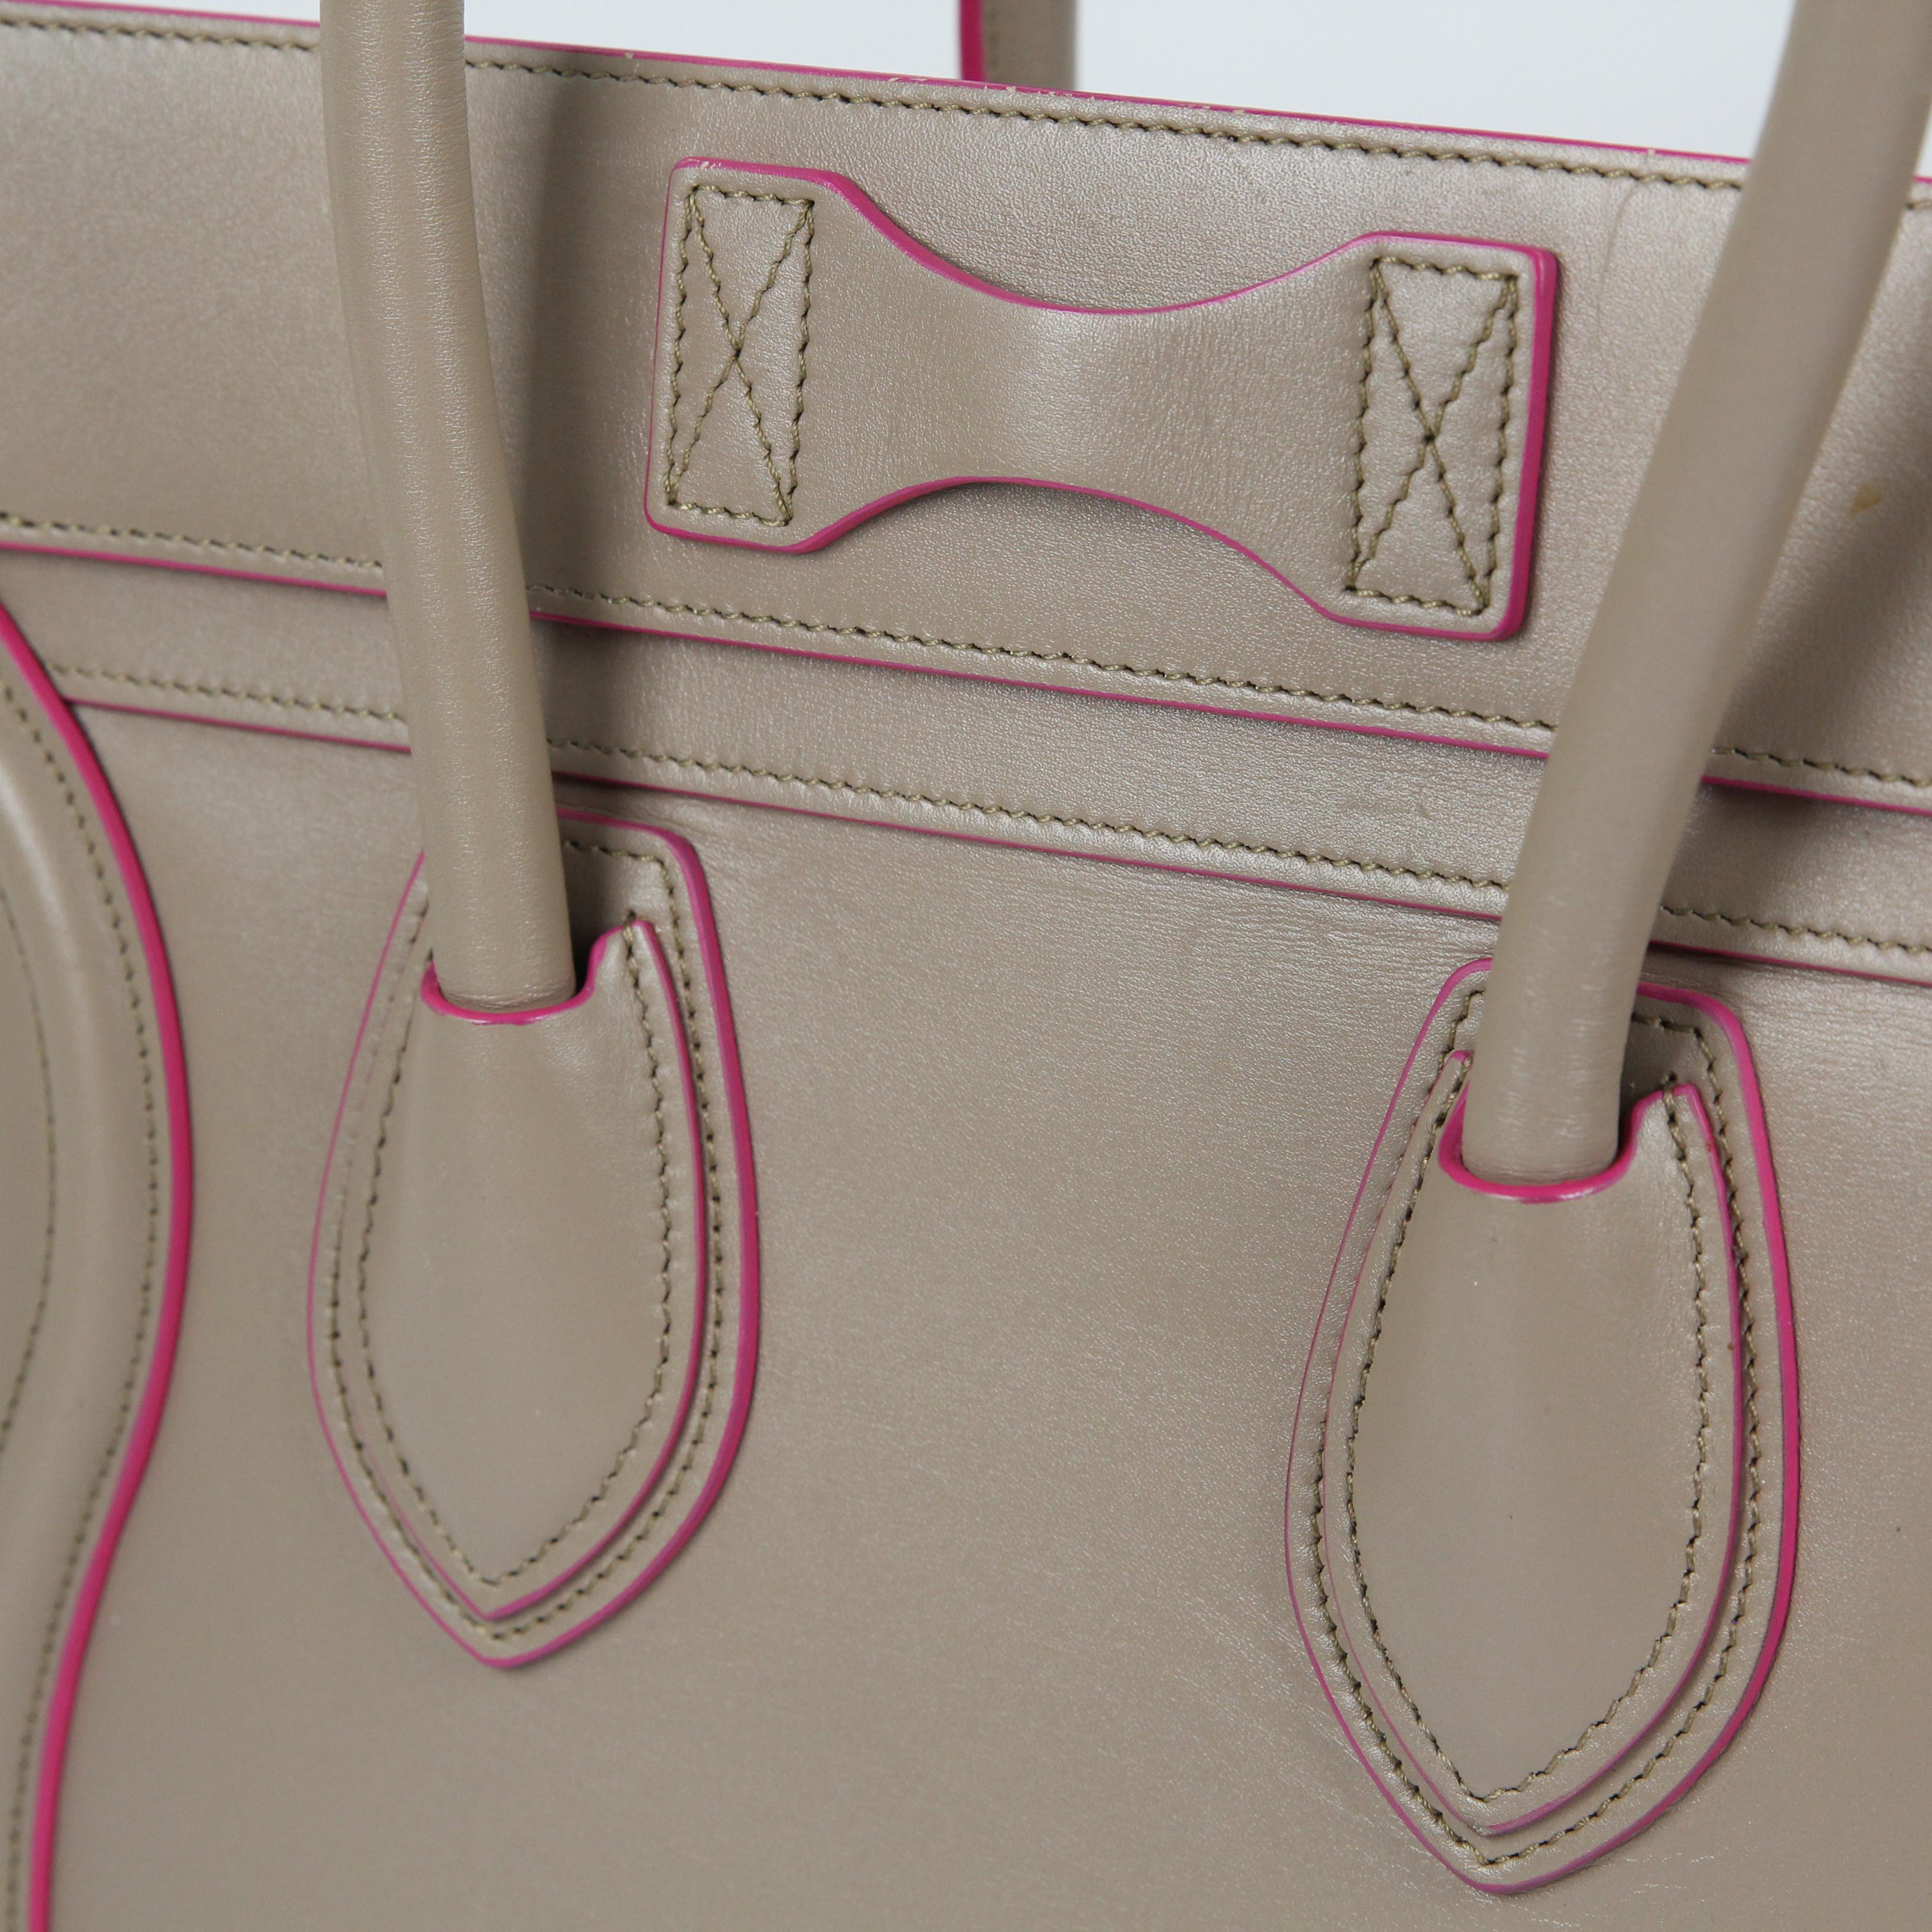 Celine Luggage leather handbag For Sale 5